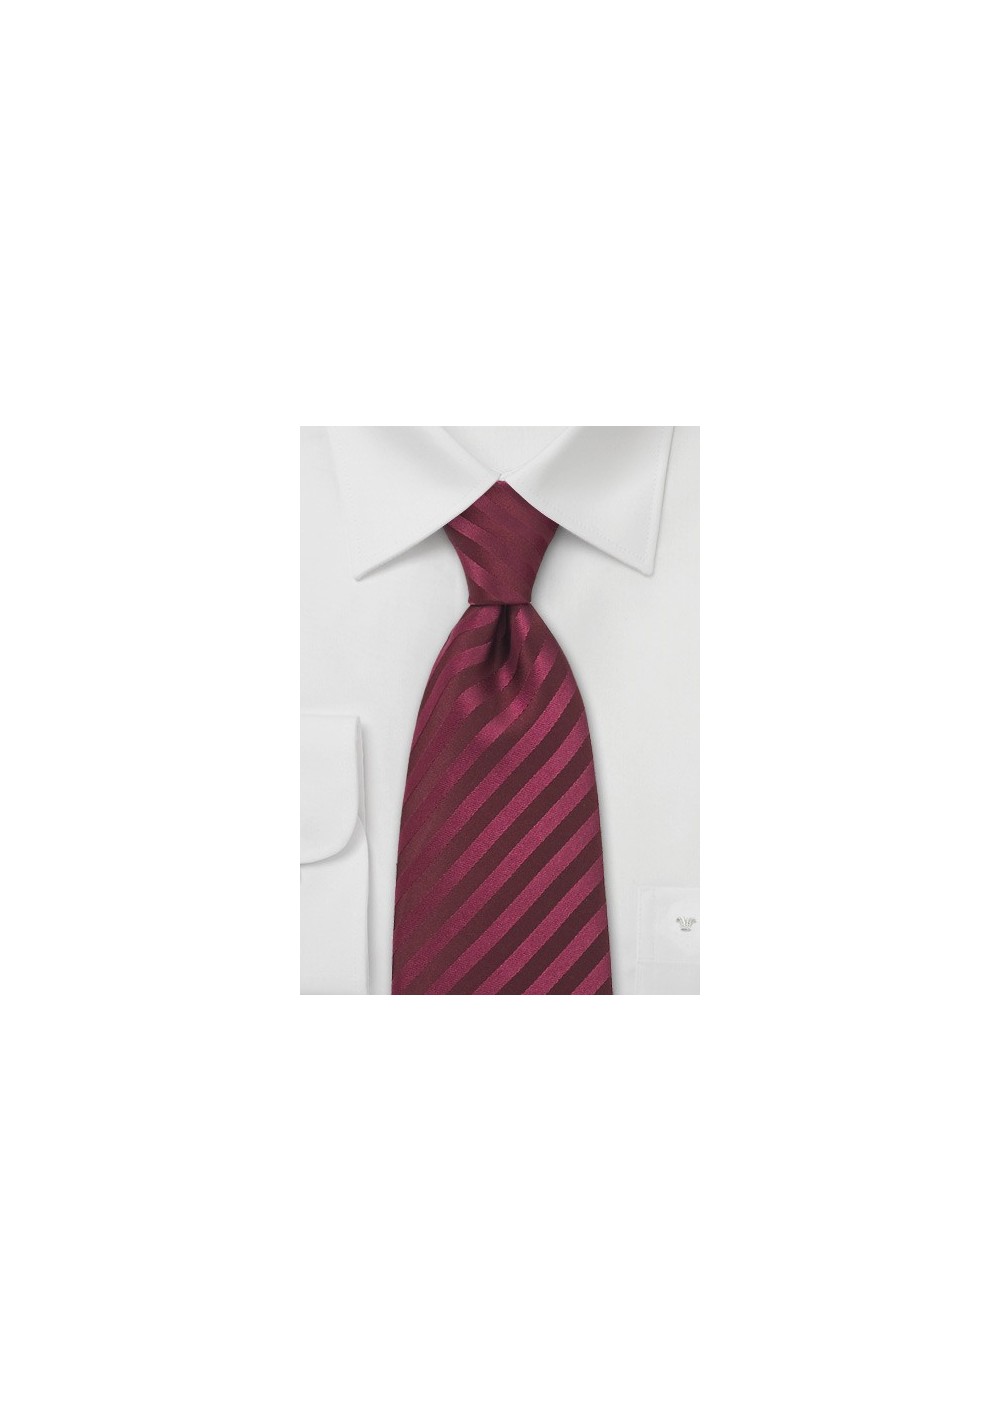 XL Berry Red Silk Tie